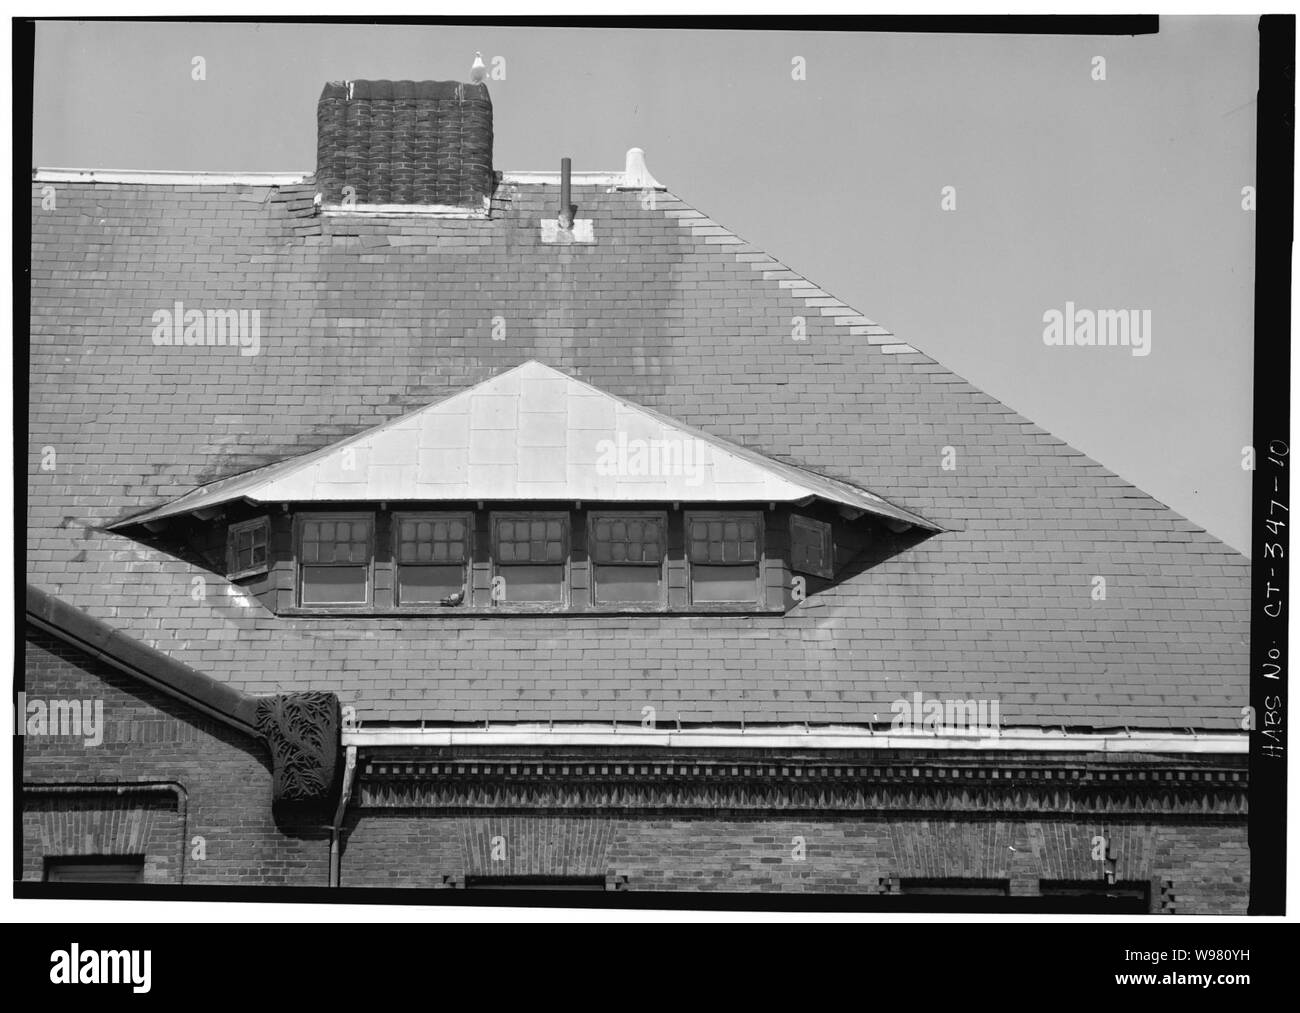 DETAIL VON DORMER im East End von Dach, Fassade - Neue London Bahnhof. Stockfoto